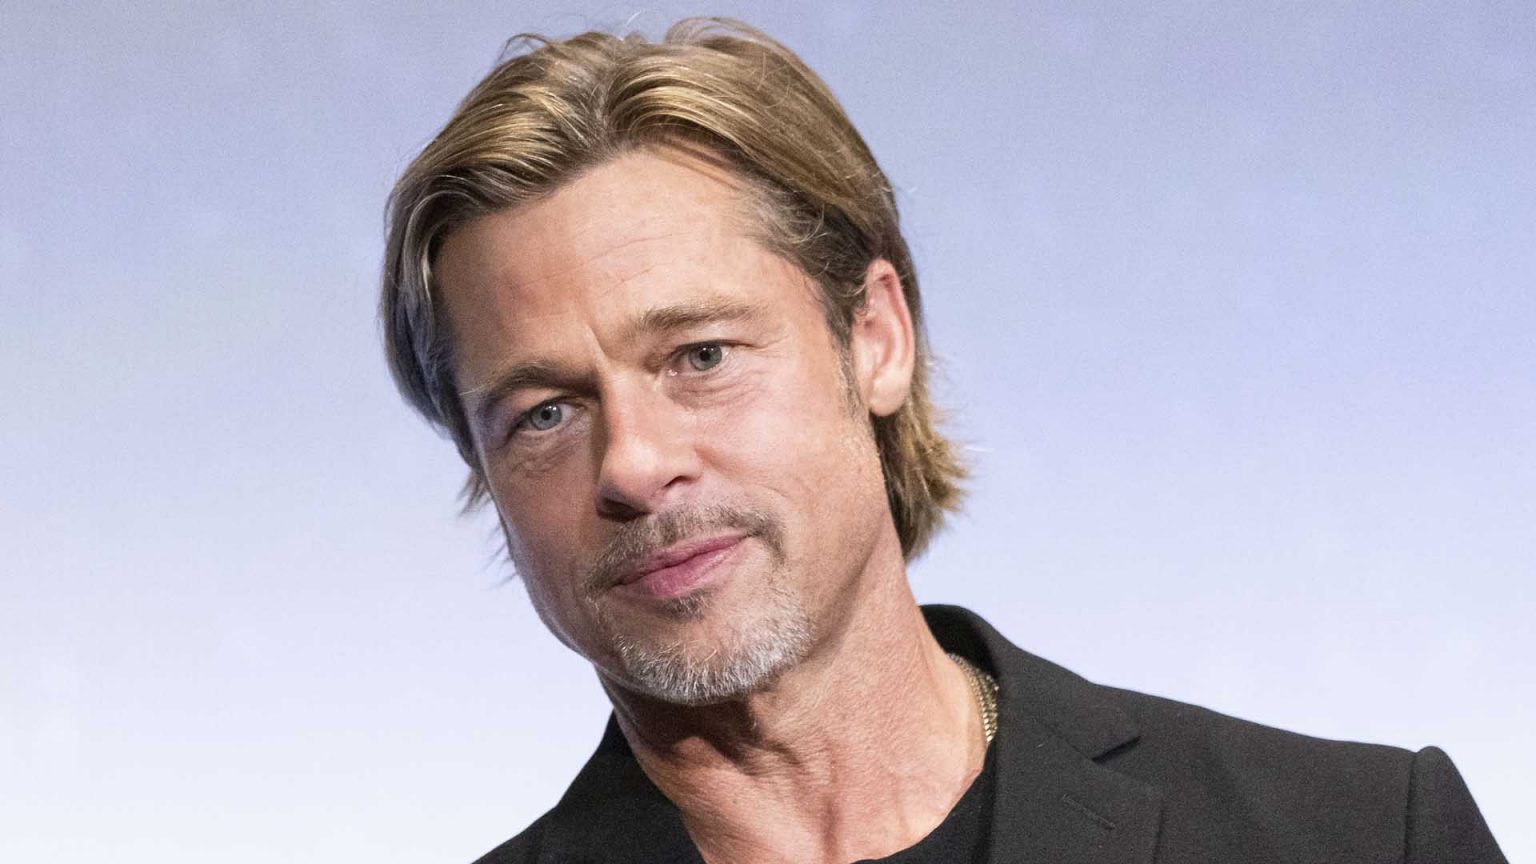 Brad Pitt revela episodios oscuros de su pasado: “Siempre me he sentido solo”